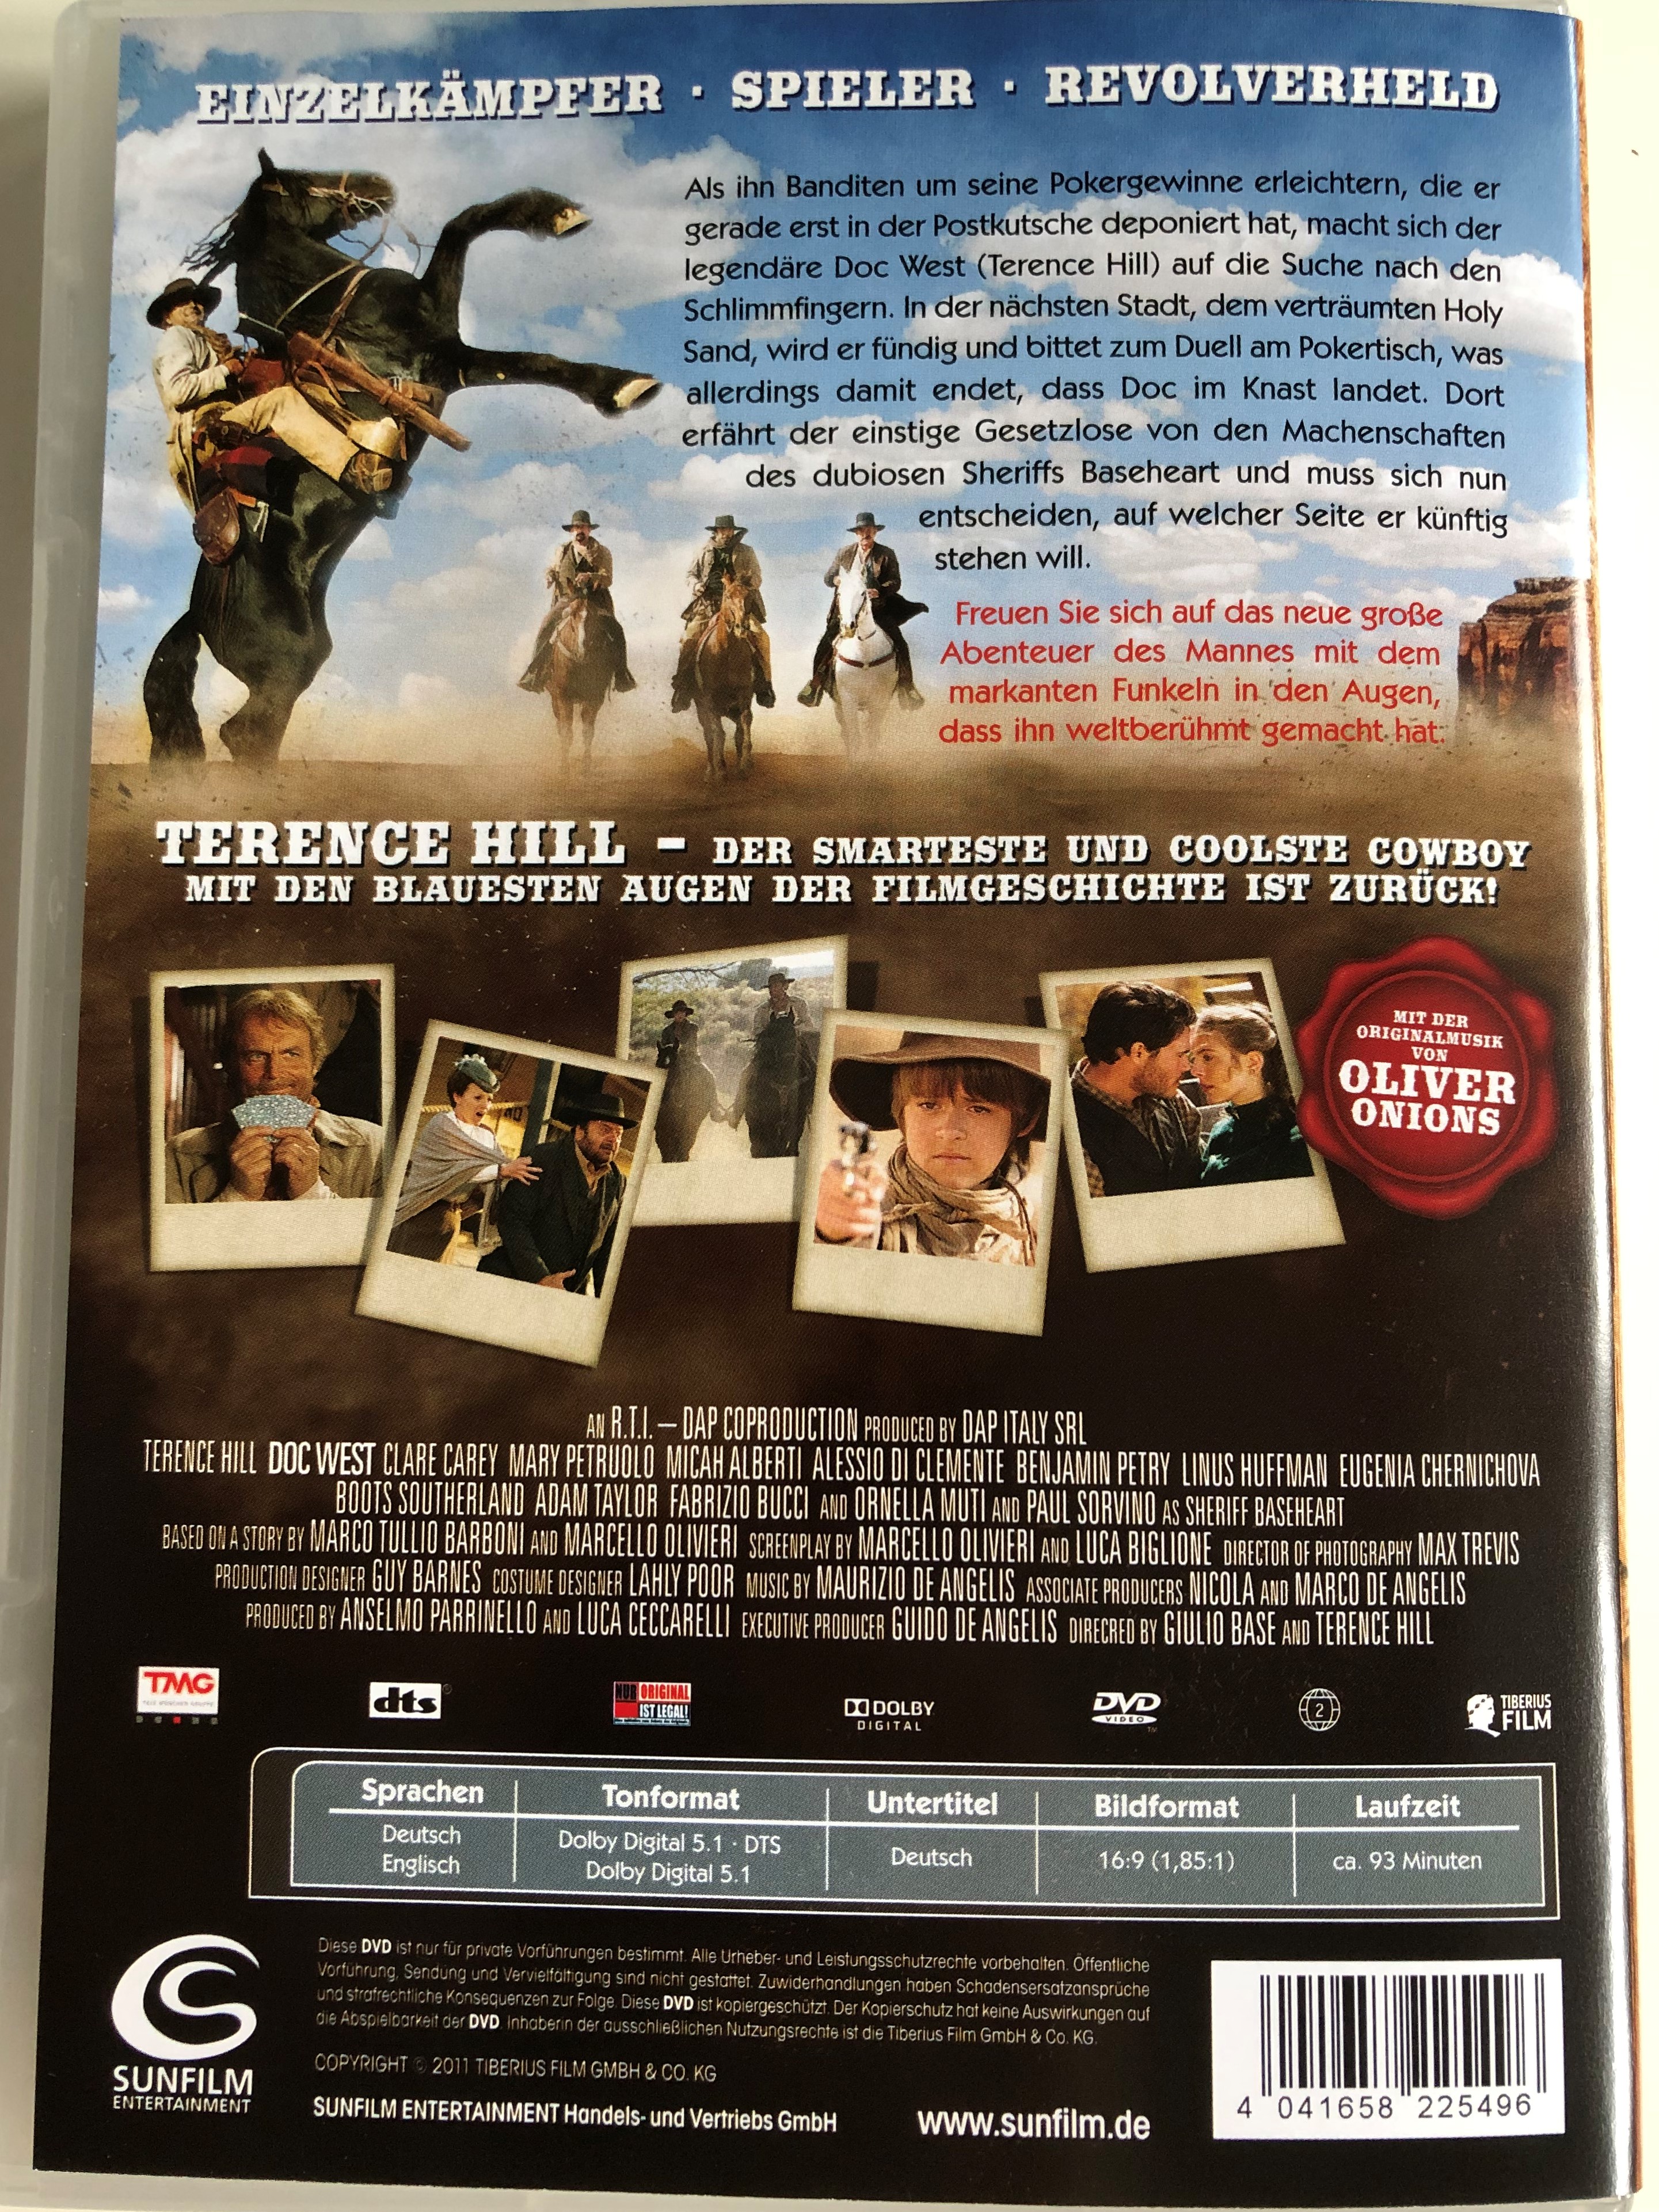 doc-west-dvd-2009-directed-by-terence-hill-giulio-base-starring-terence-hill-paul-sorvino-der-smarteste-und-coolste-cowboy-mit-den-blauesten-augen-der-filmgeschichte-ist-zur-ck-2-.jpg